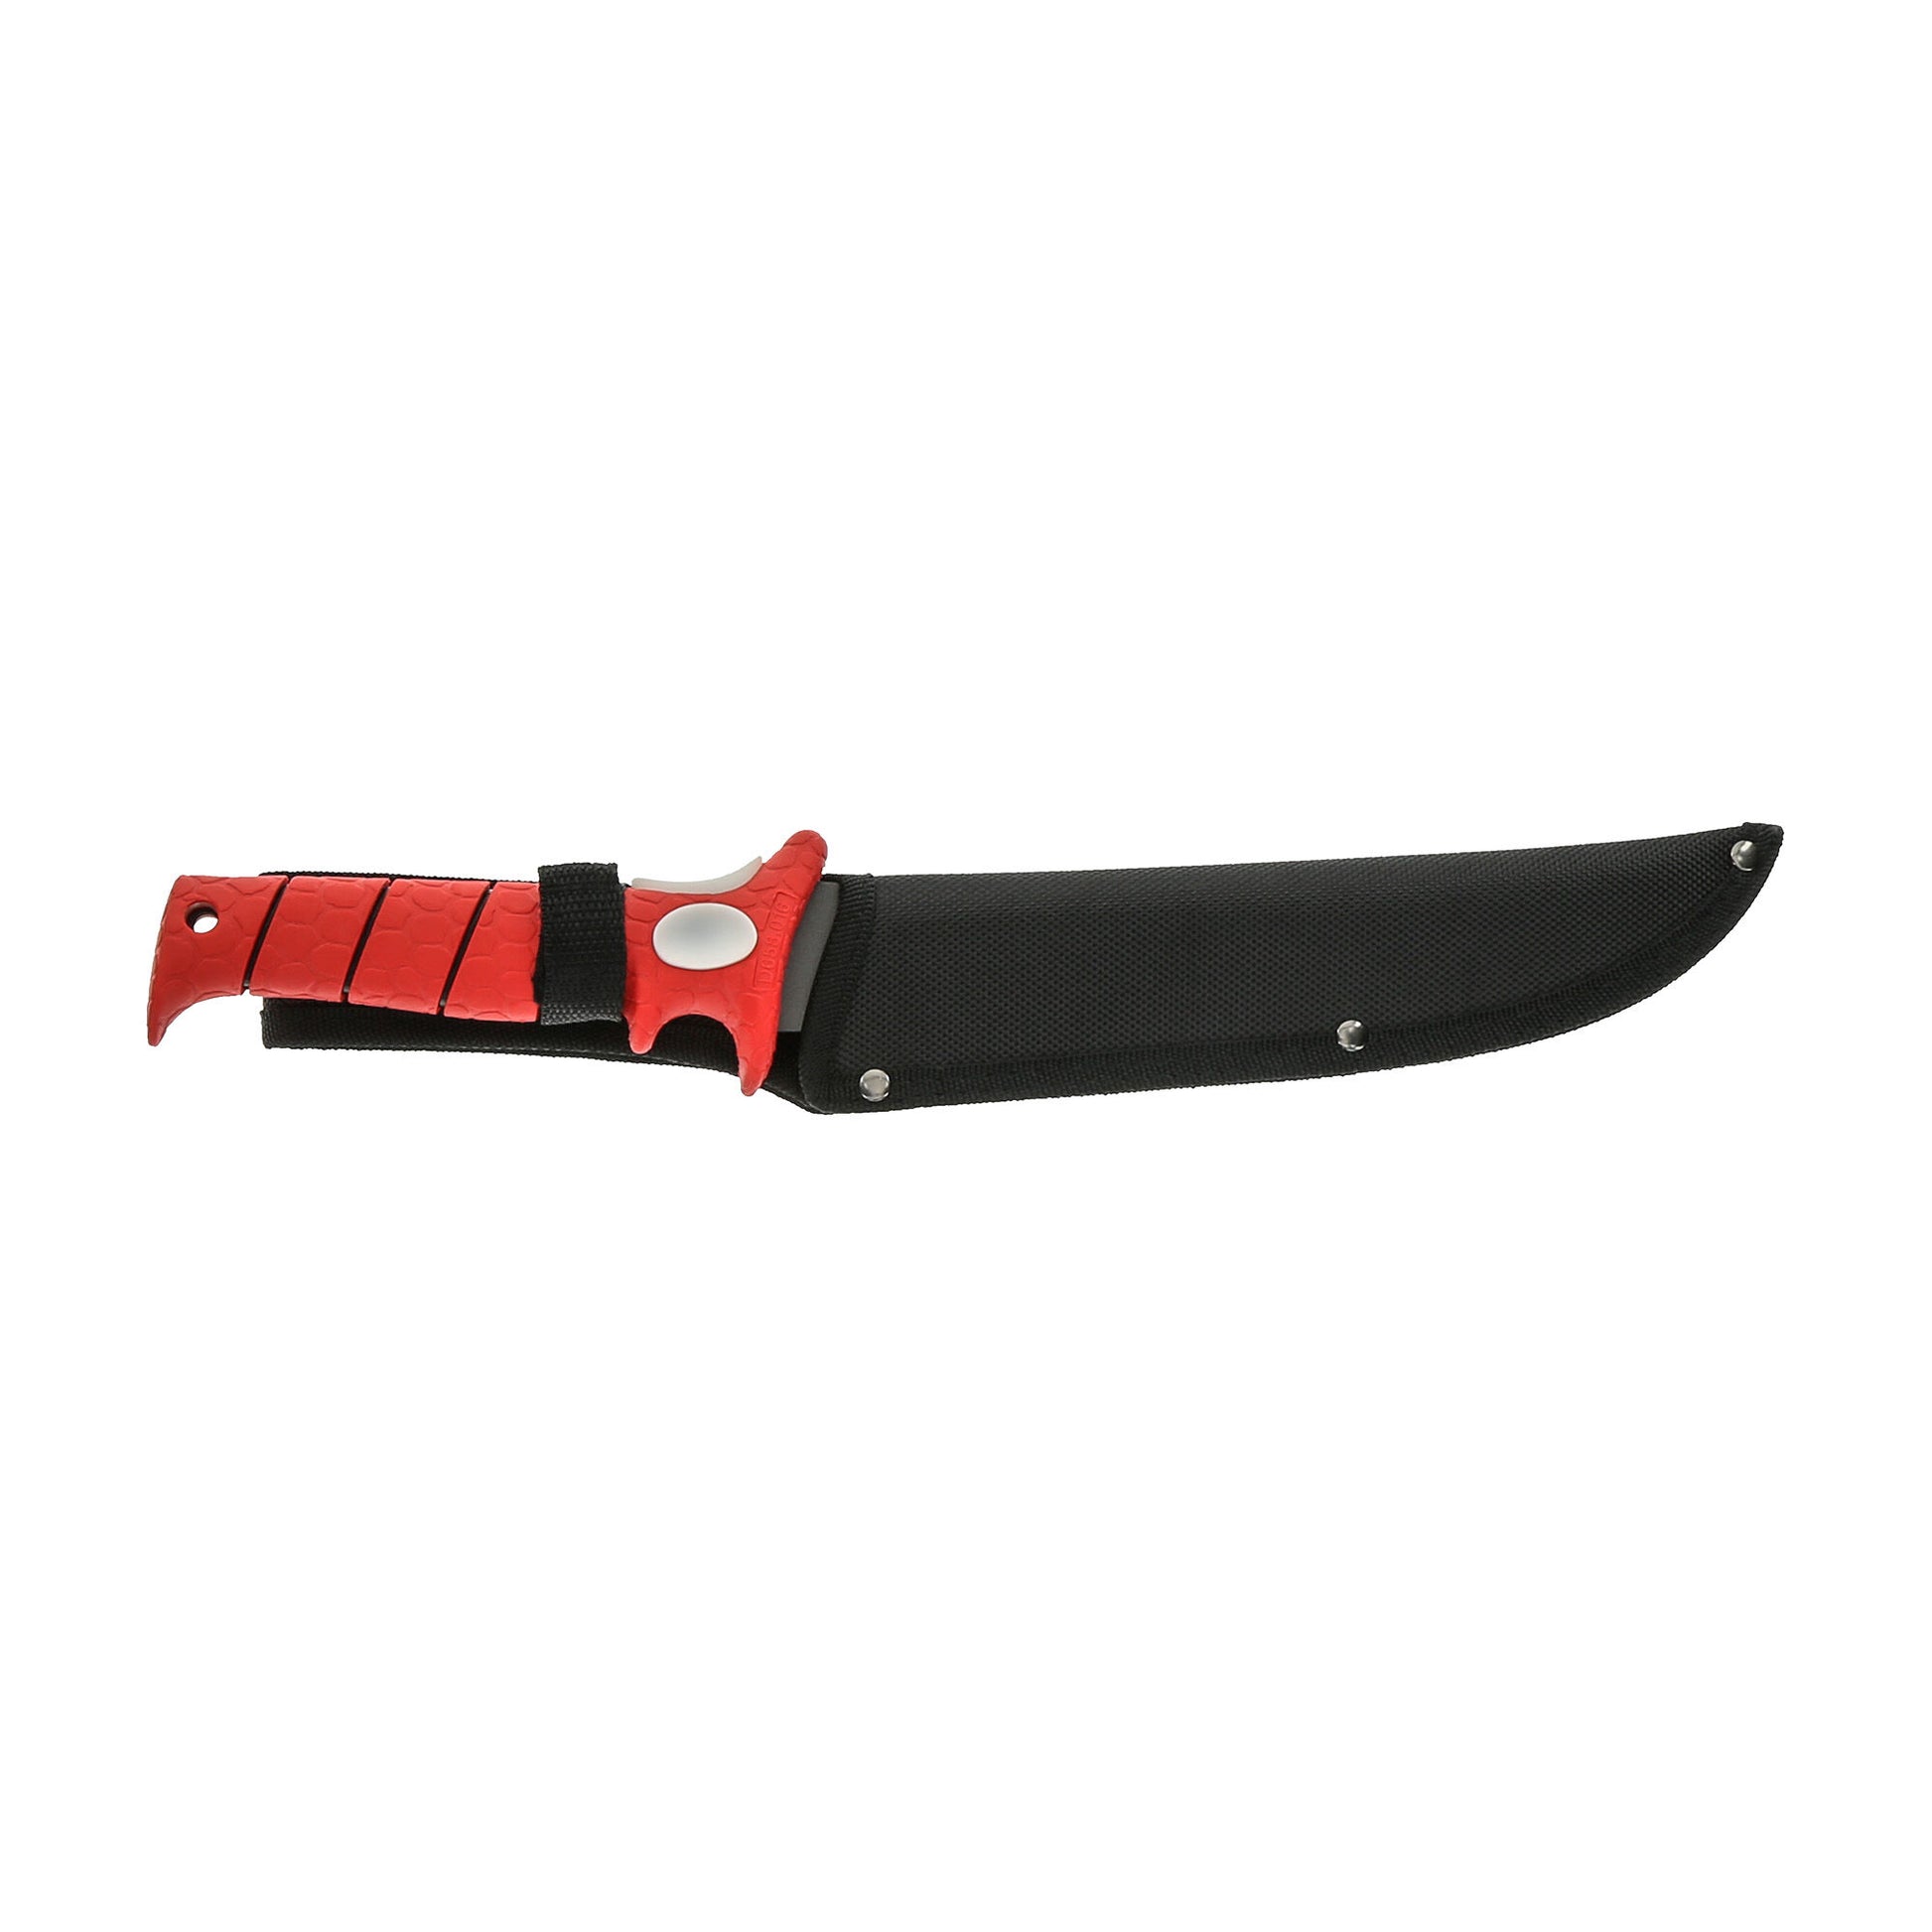 Bubba Blade 9" Flex Knife - Dogfish Tackle & Marine